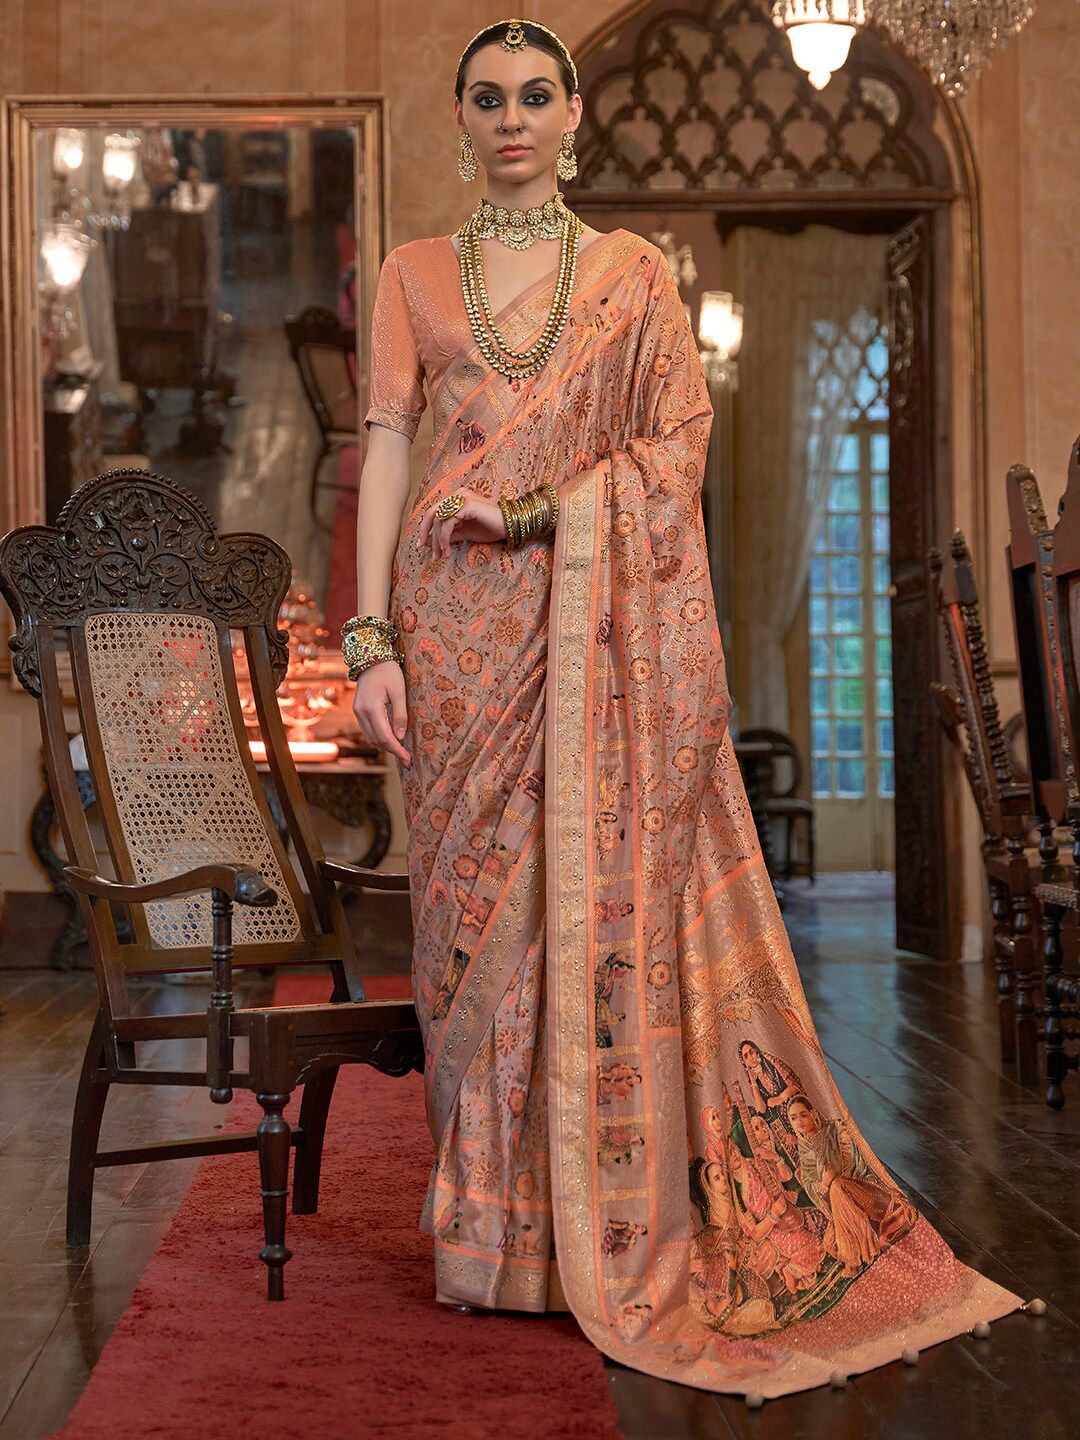 Anouk Floral Motifs Printed Beads and Stones Embellished Banarasi Saree Price in India